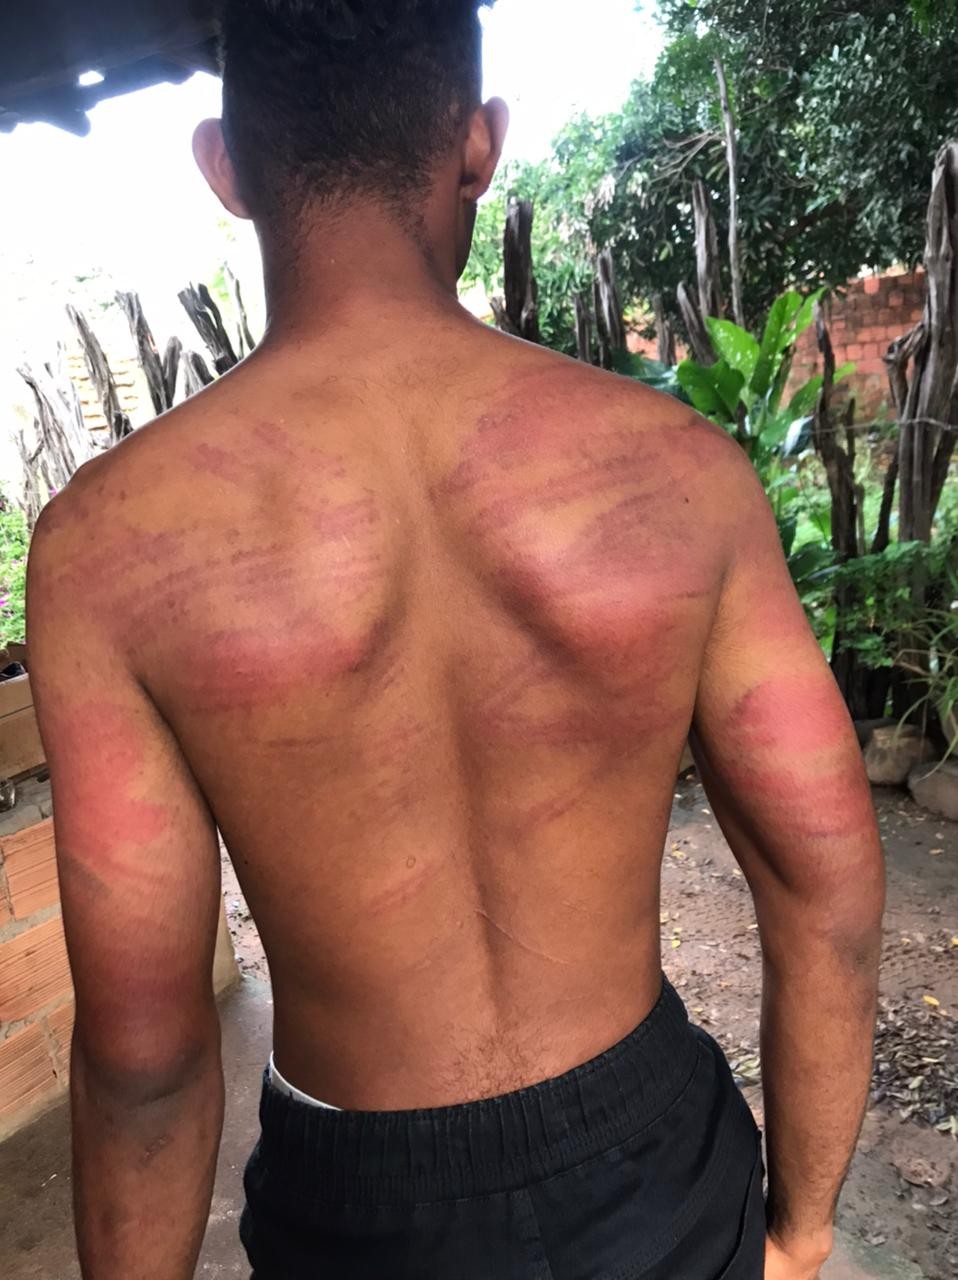 Estudante denuncia policiais militares por tortura em matagal após abordagem em escola no Piauí